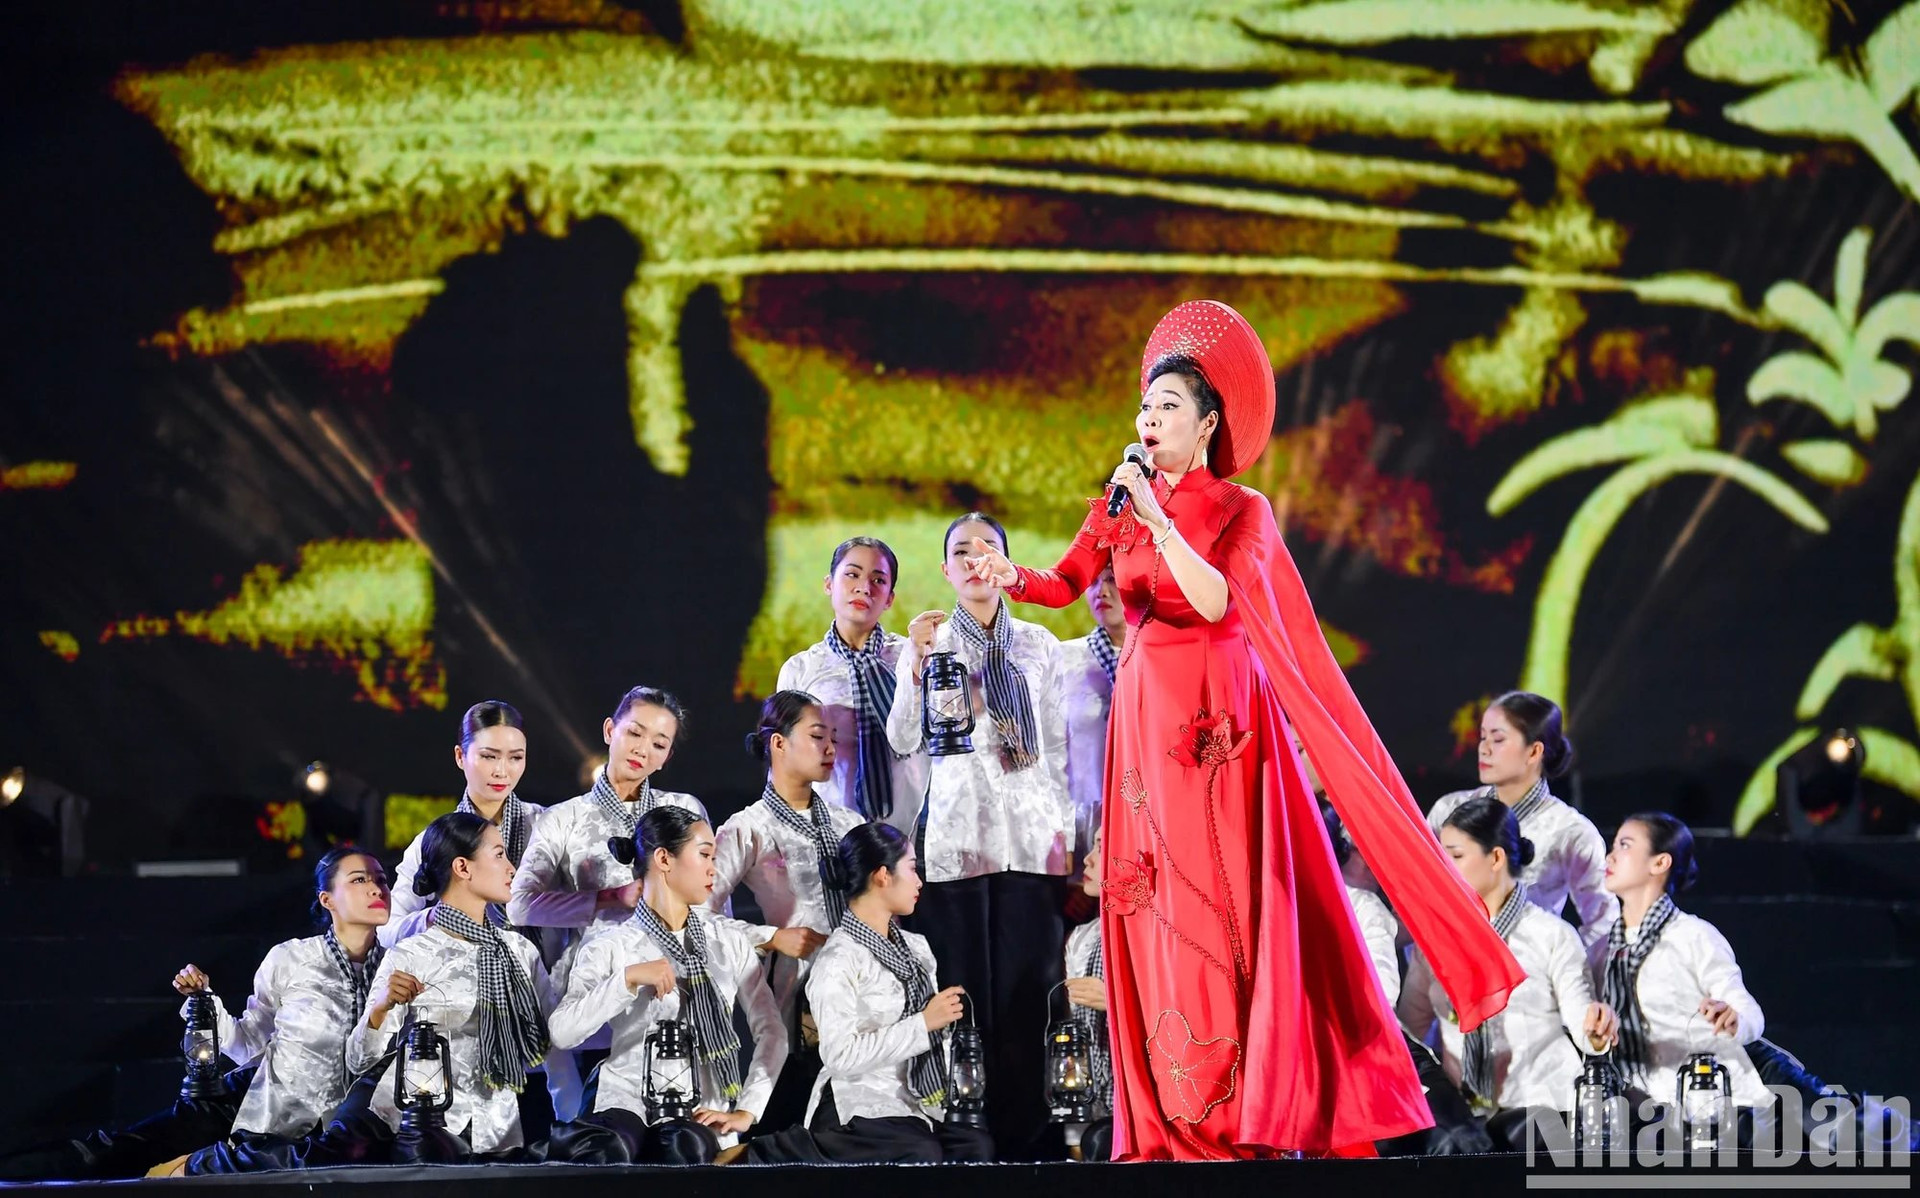 Nghệ sĩ Ưu tú Thiên Hoa biểu diễn ca khúc Bông huệ đỏ.